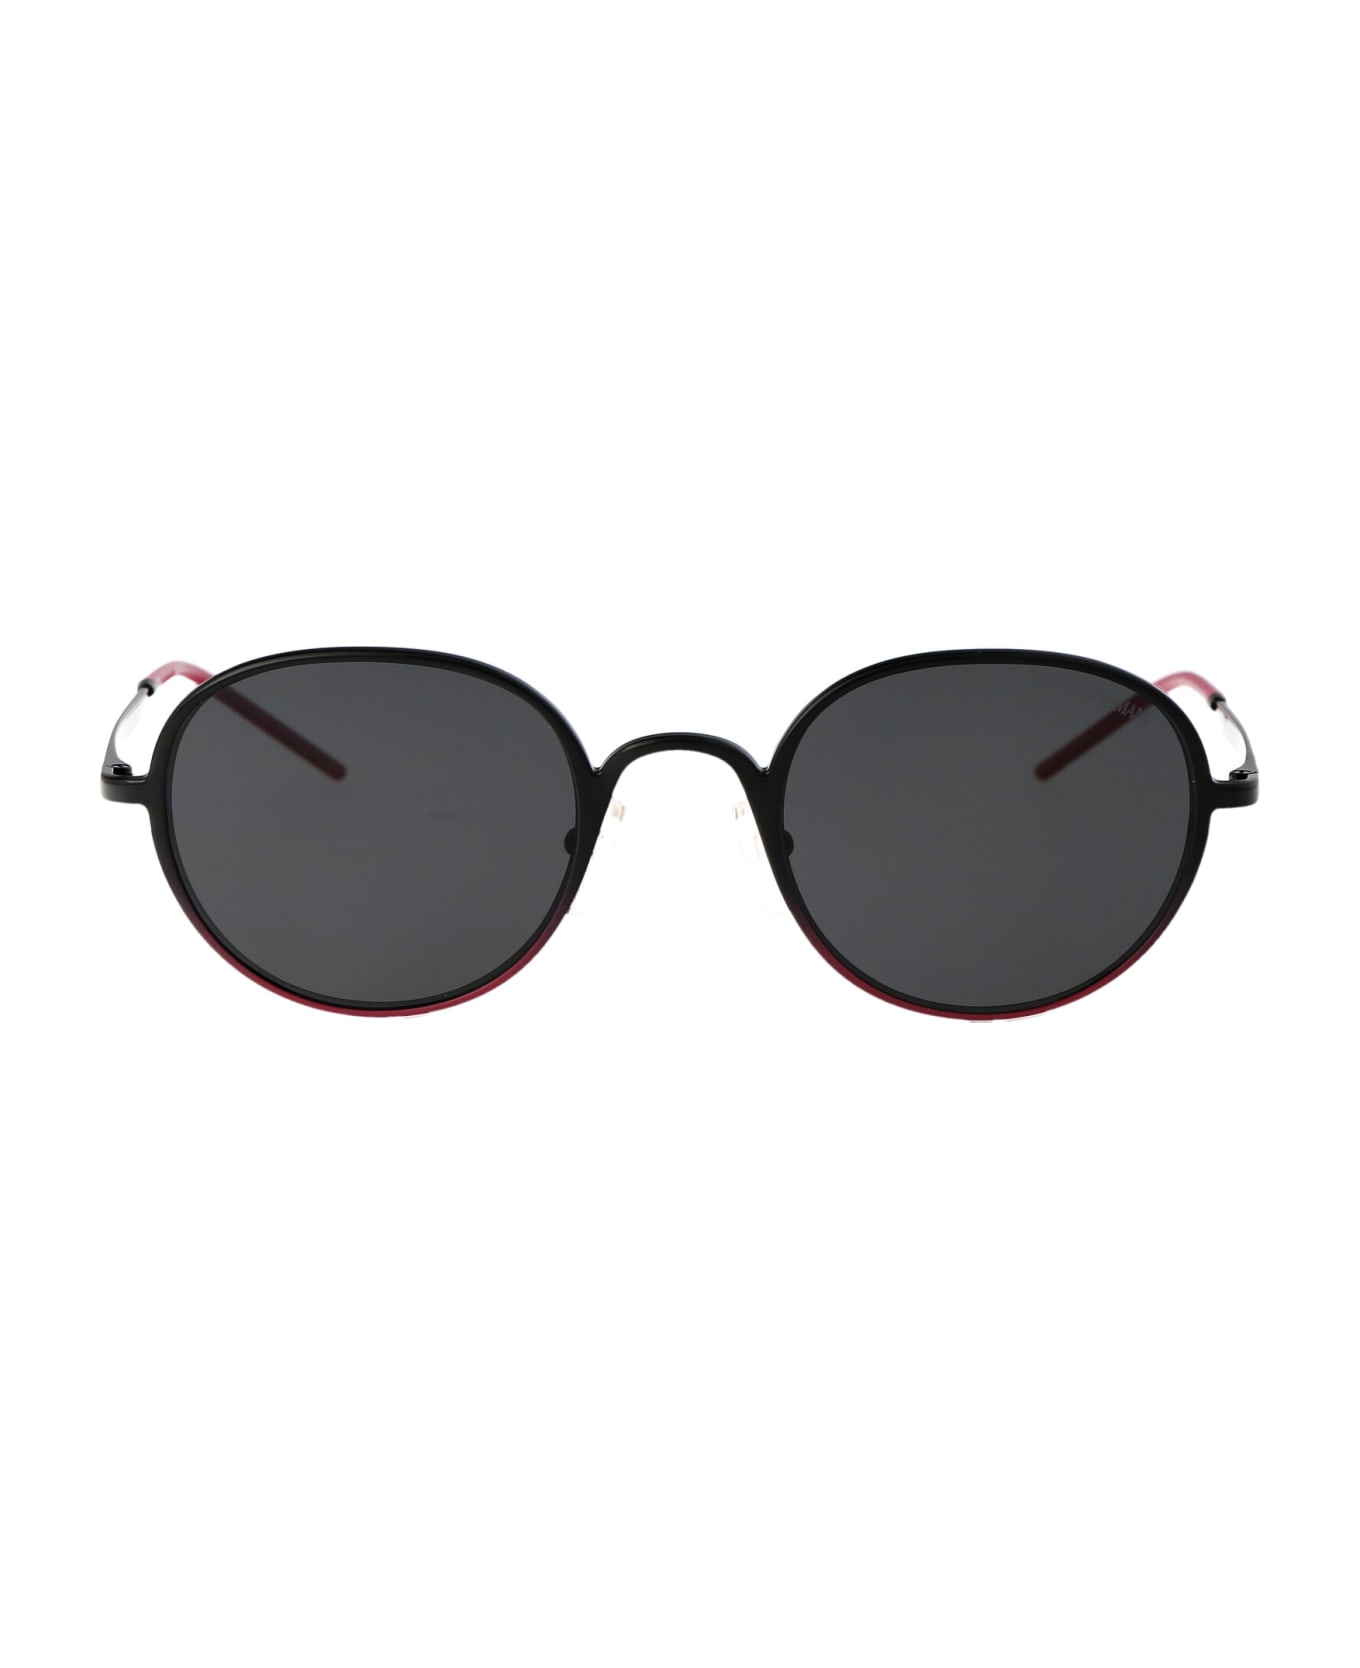 Emporio Armani 0ea2151 Sunglasses - 337487 Shiny Black/Fuchsia Dark Grey